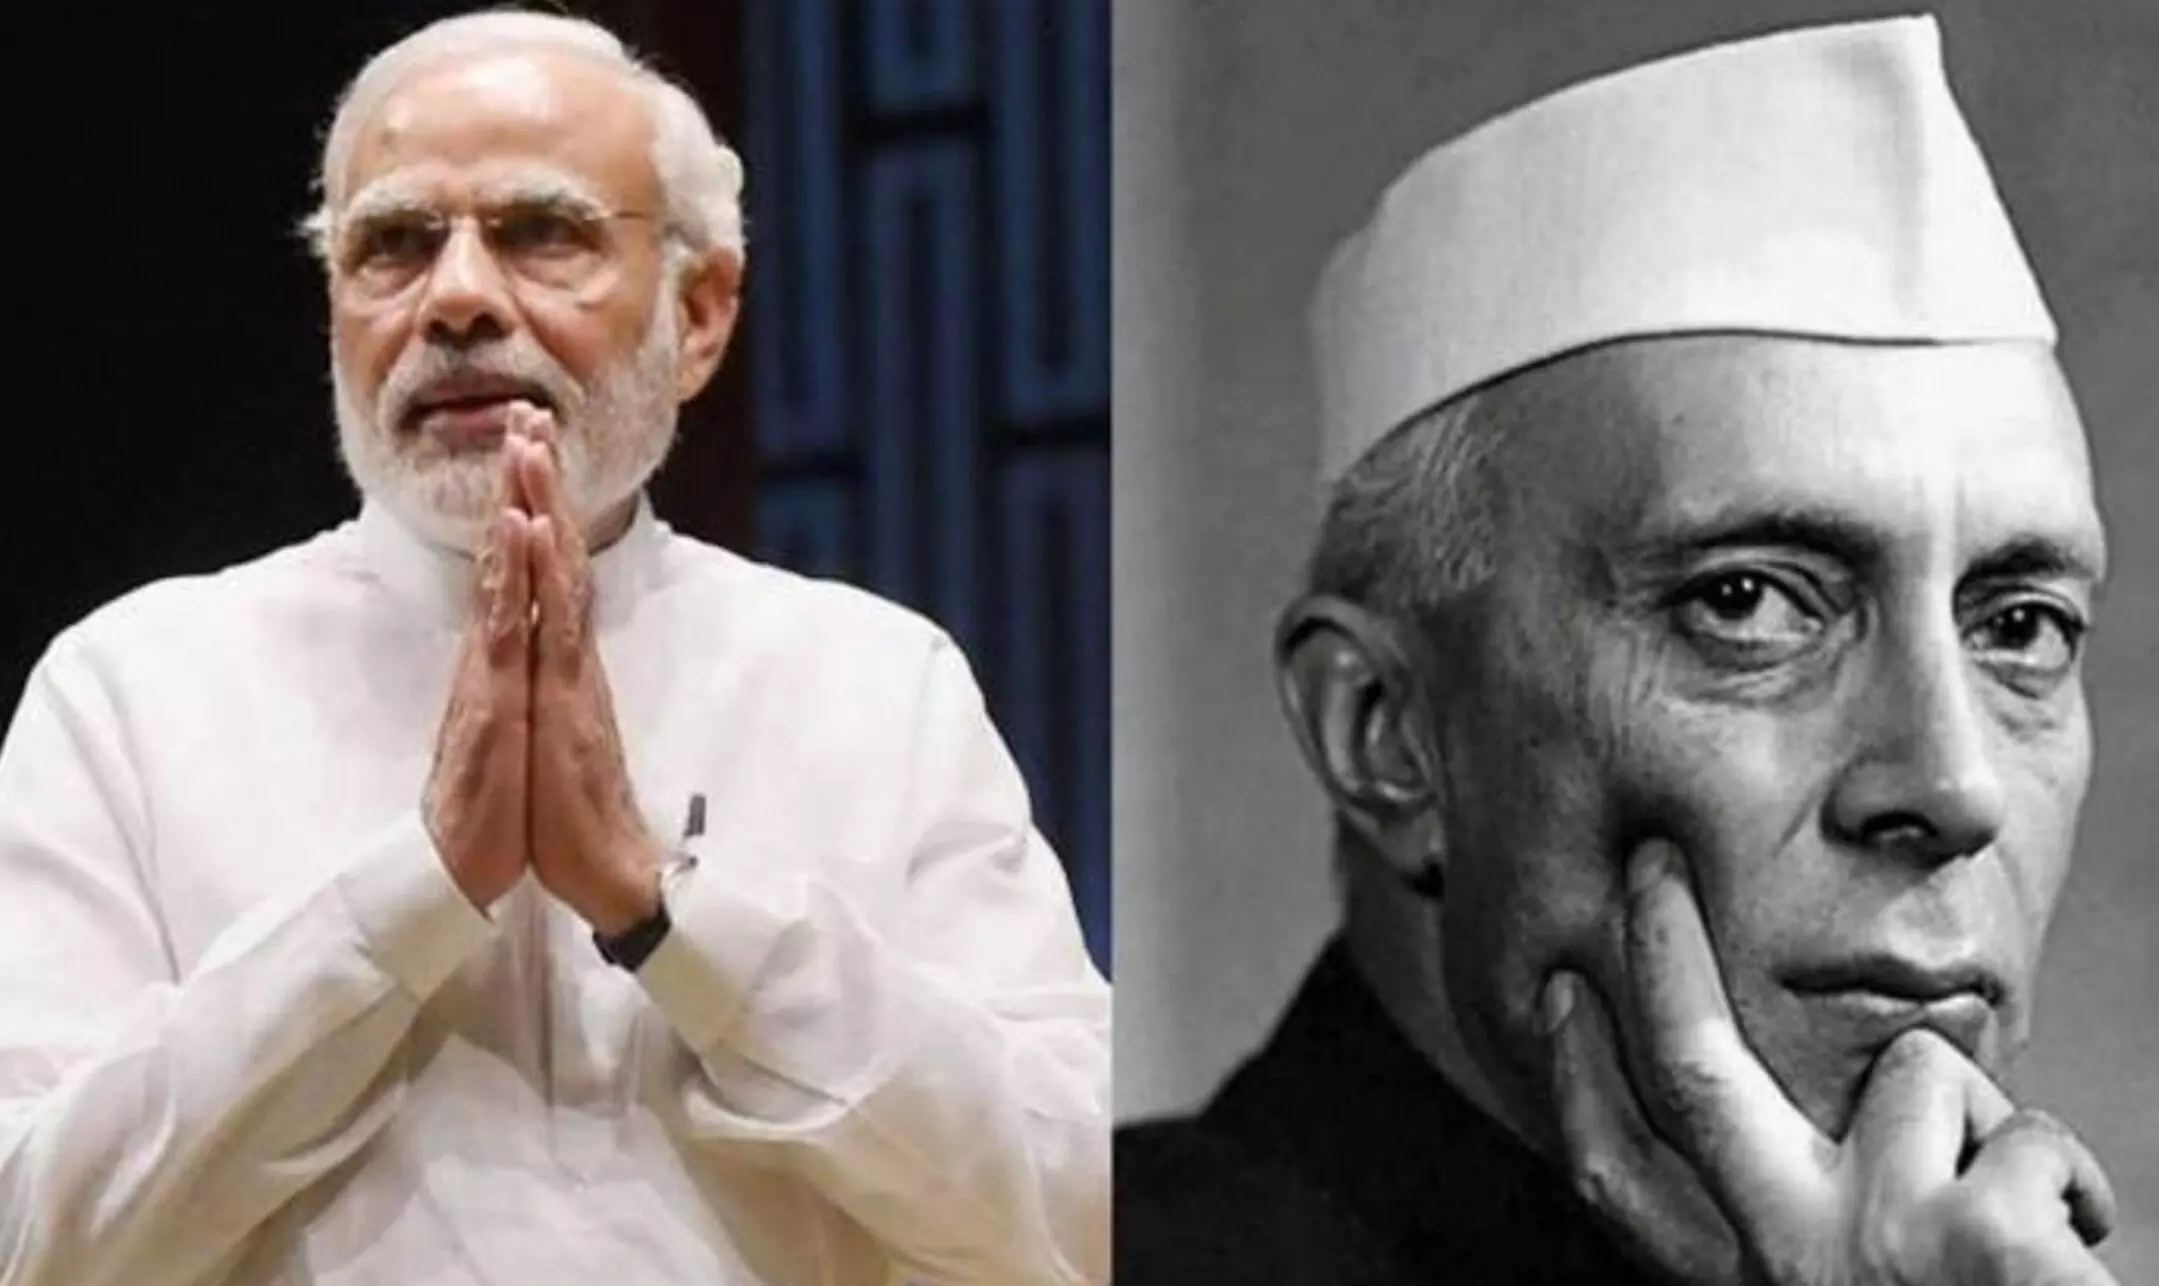 Jawaharlal Nehru Anniversary: जवाहरलाल नेहरू की जयंती पर पीएम मोदी ने दी श्रद्धांजलि दी